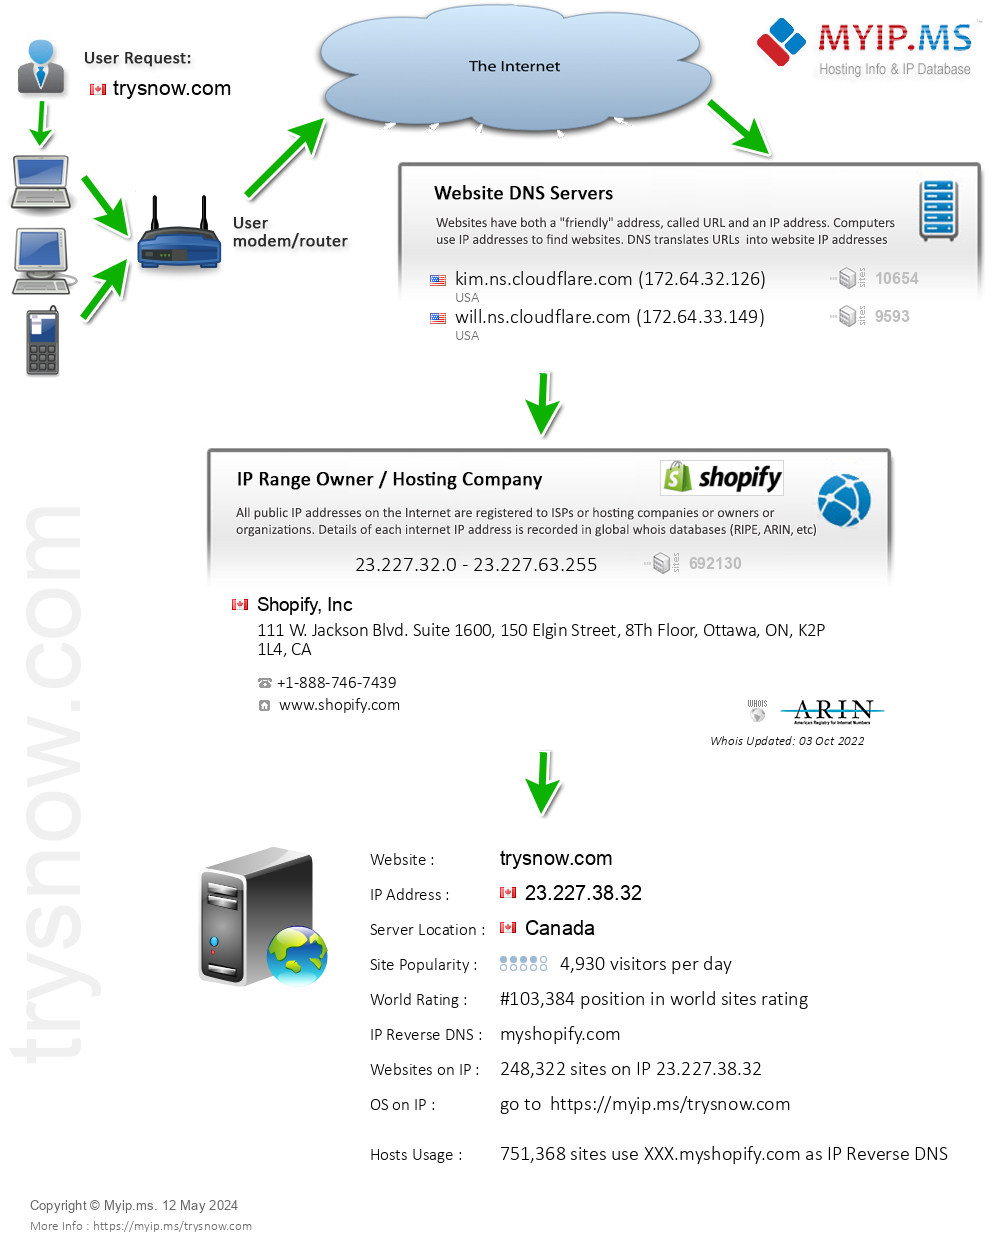 Trysnow.com - Website Hosting Visual IP Diagram